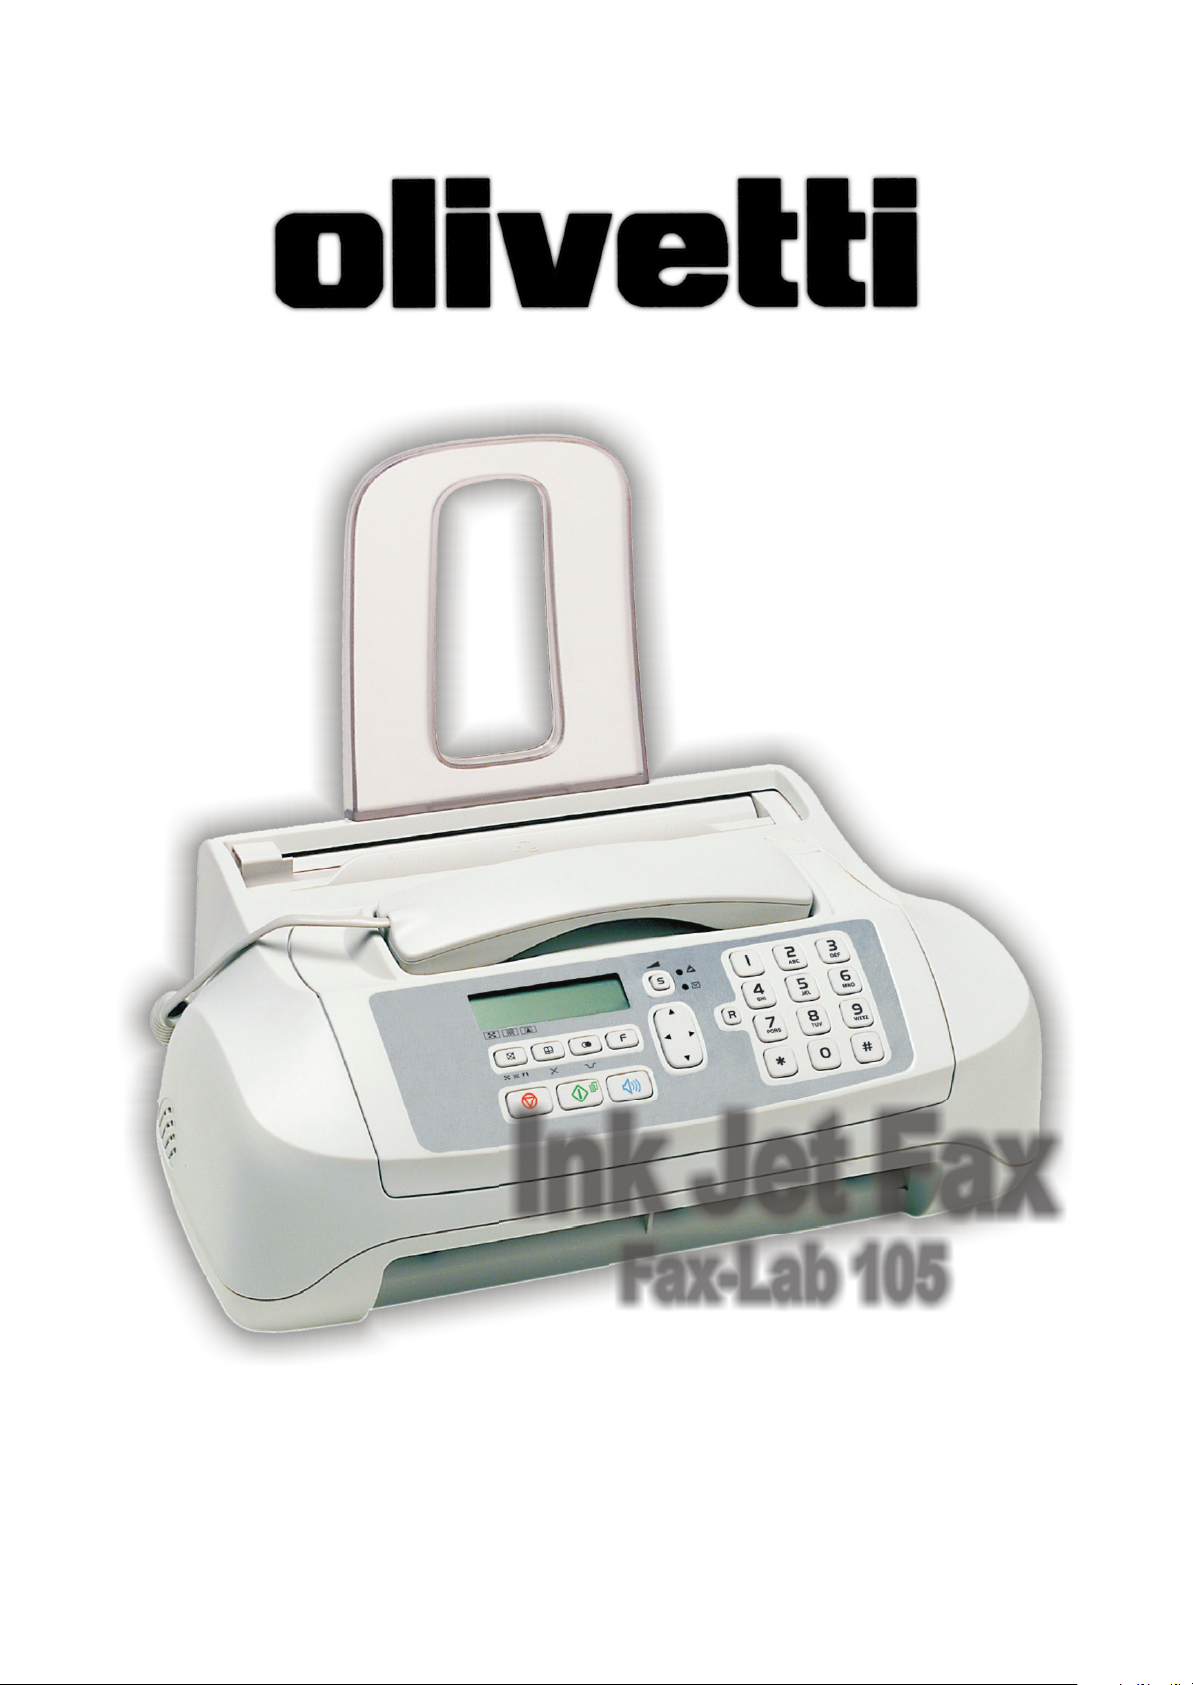 Fax-Lab 105F